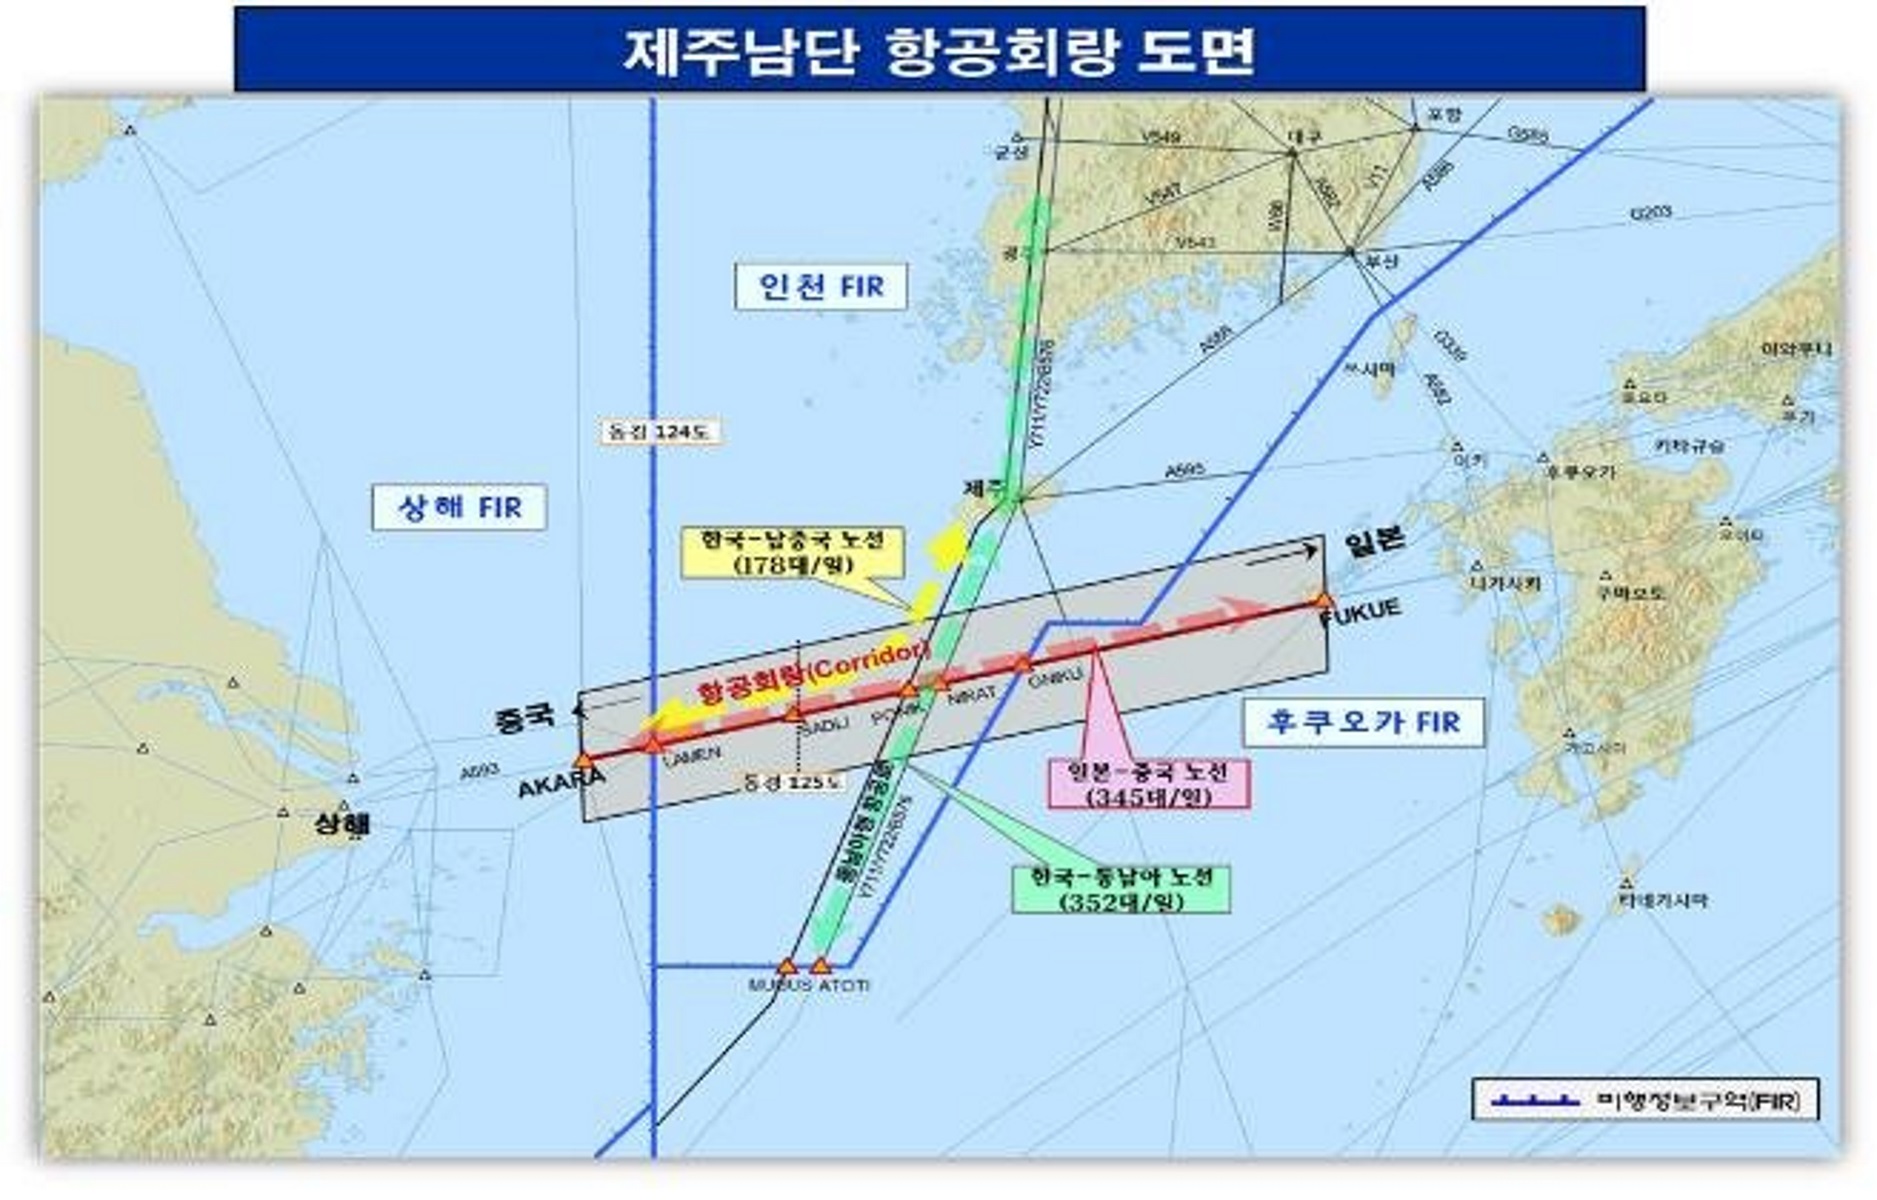 Συνεργασία Νότιας Κορέας, Ιαπωνίας, Κίνας για την εναέρια κυκλοφορία στον αεροδιάδρομο “ΑΚΑRA”